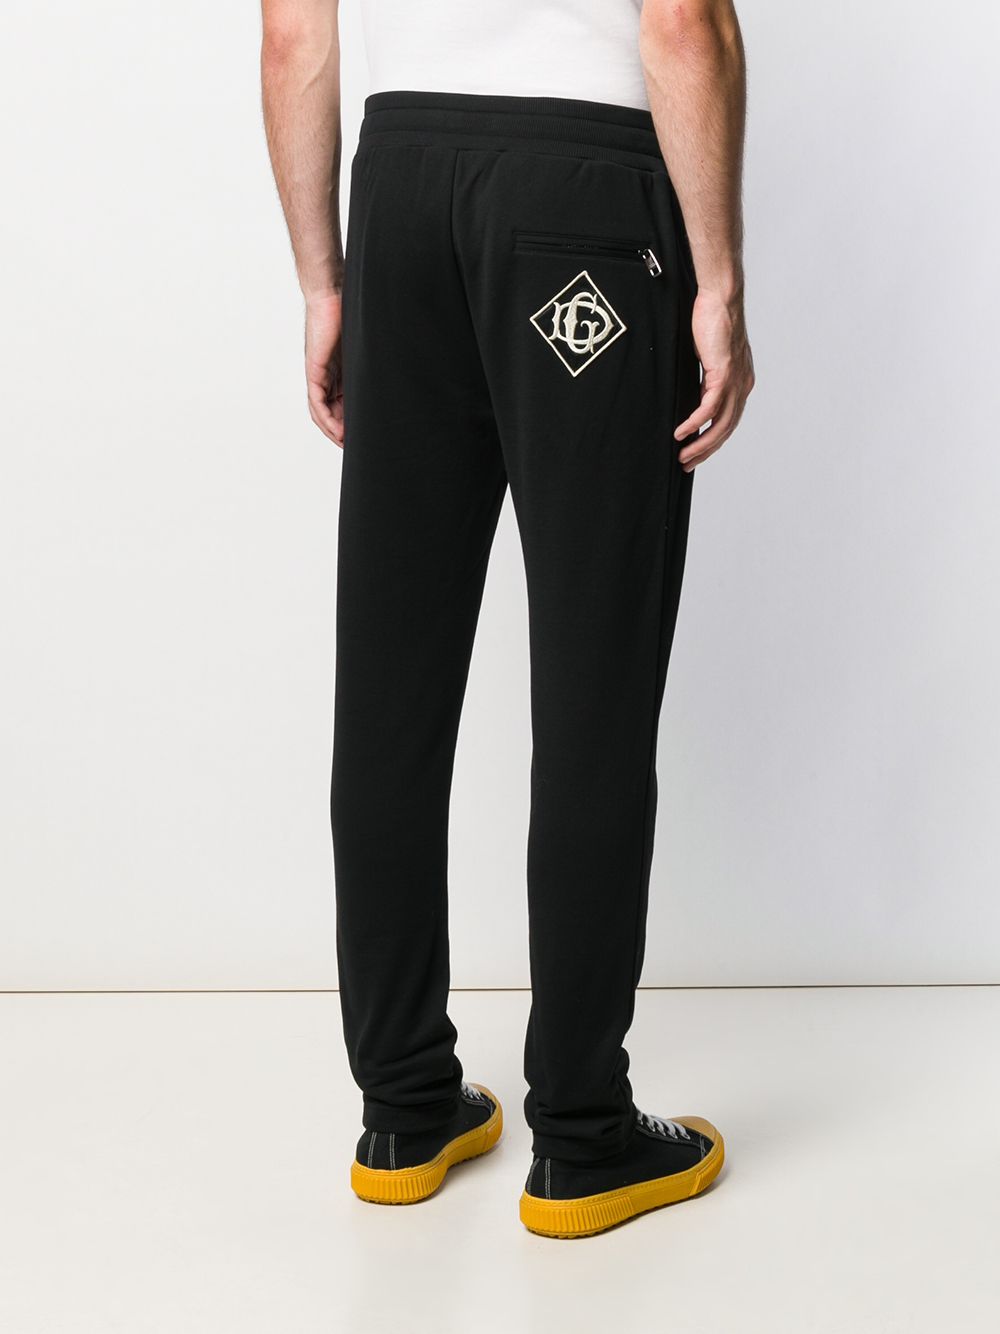 фото Dolce & Gabbana спортивные брюки с вышивкой DG